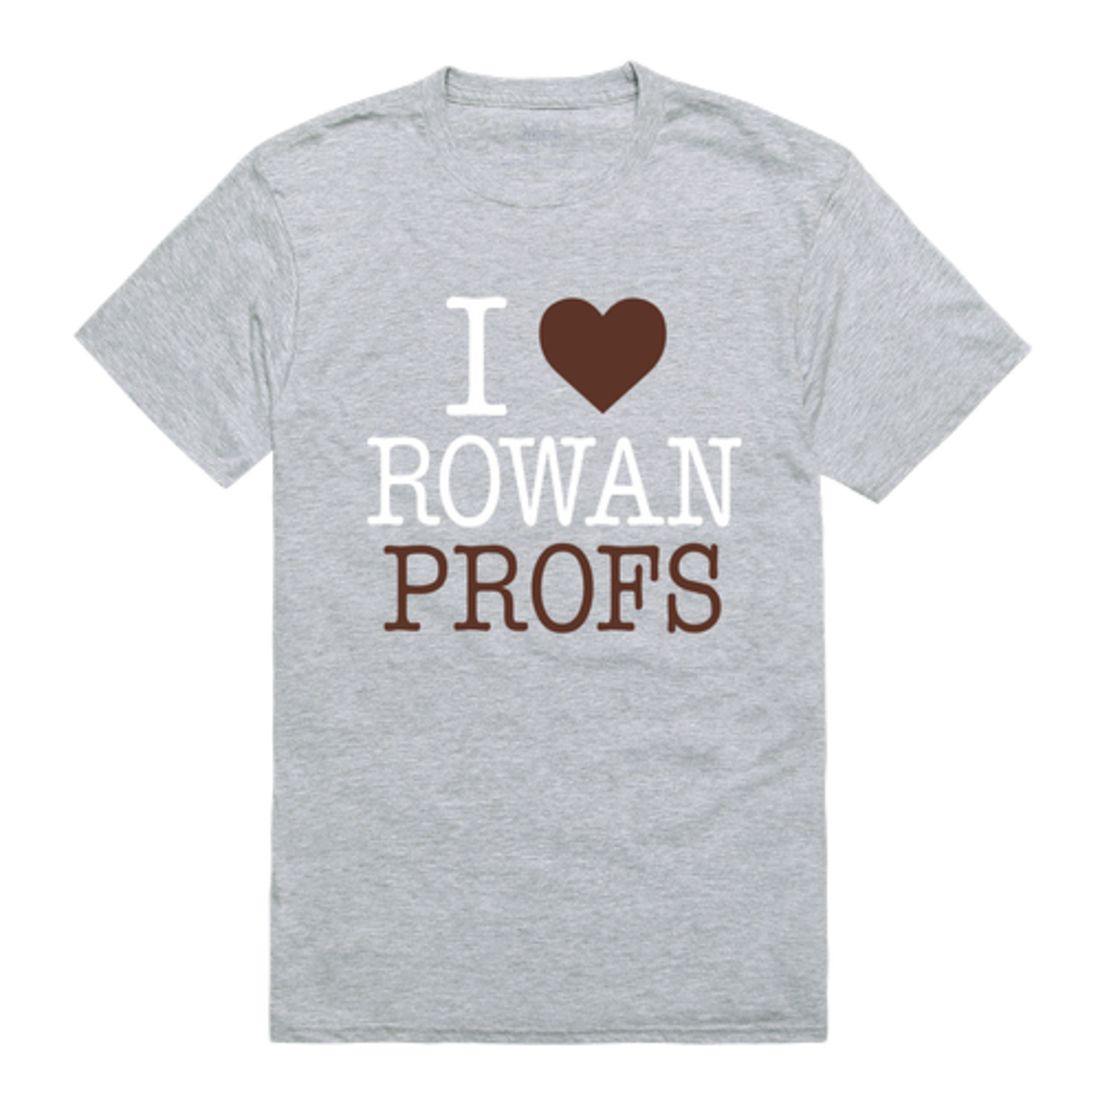 I Love Rowan University Profs T-Shirt-Campus-Wardrobe